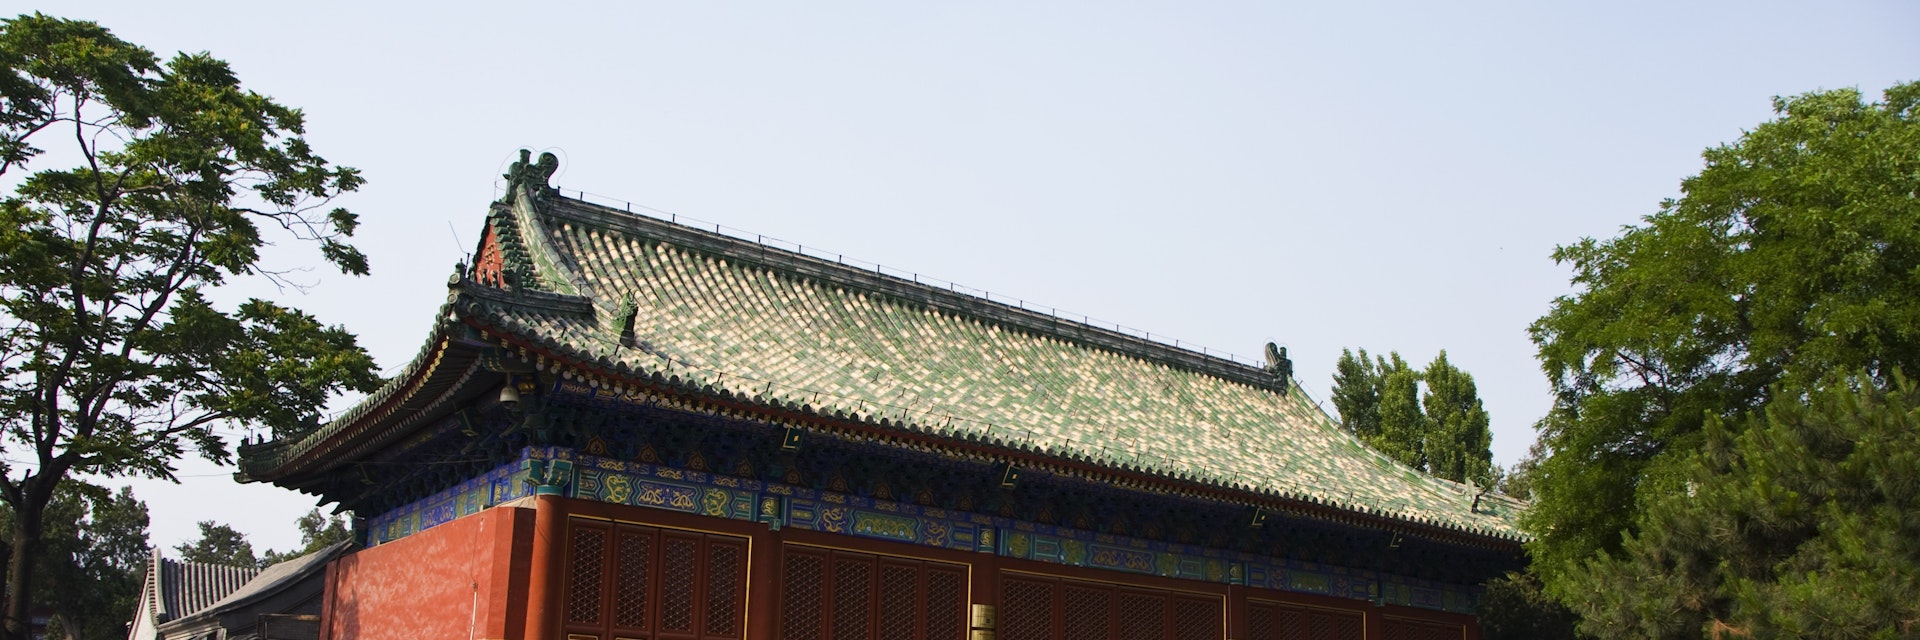 Beijing Ancient Architecture Museum (Gudai Jianzhu Bowuguan).